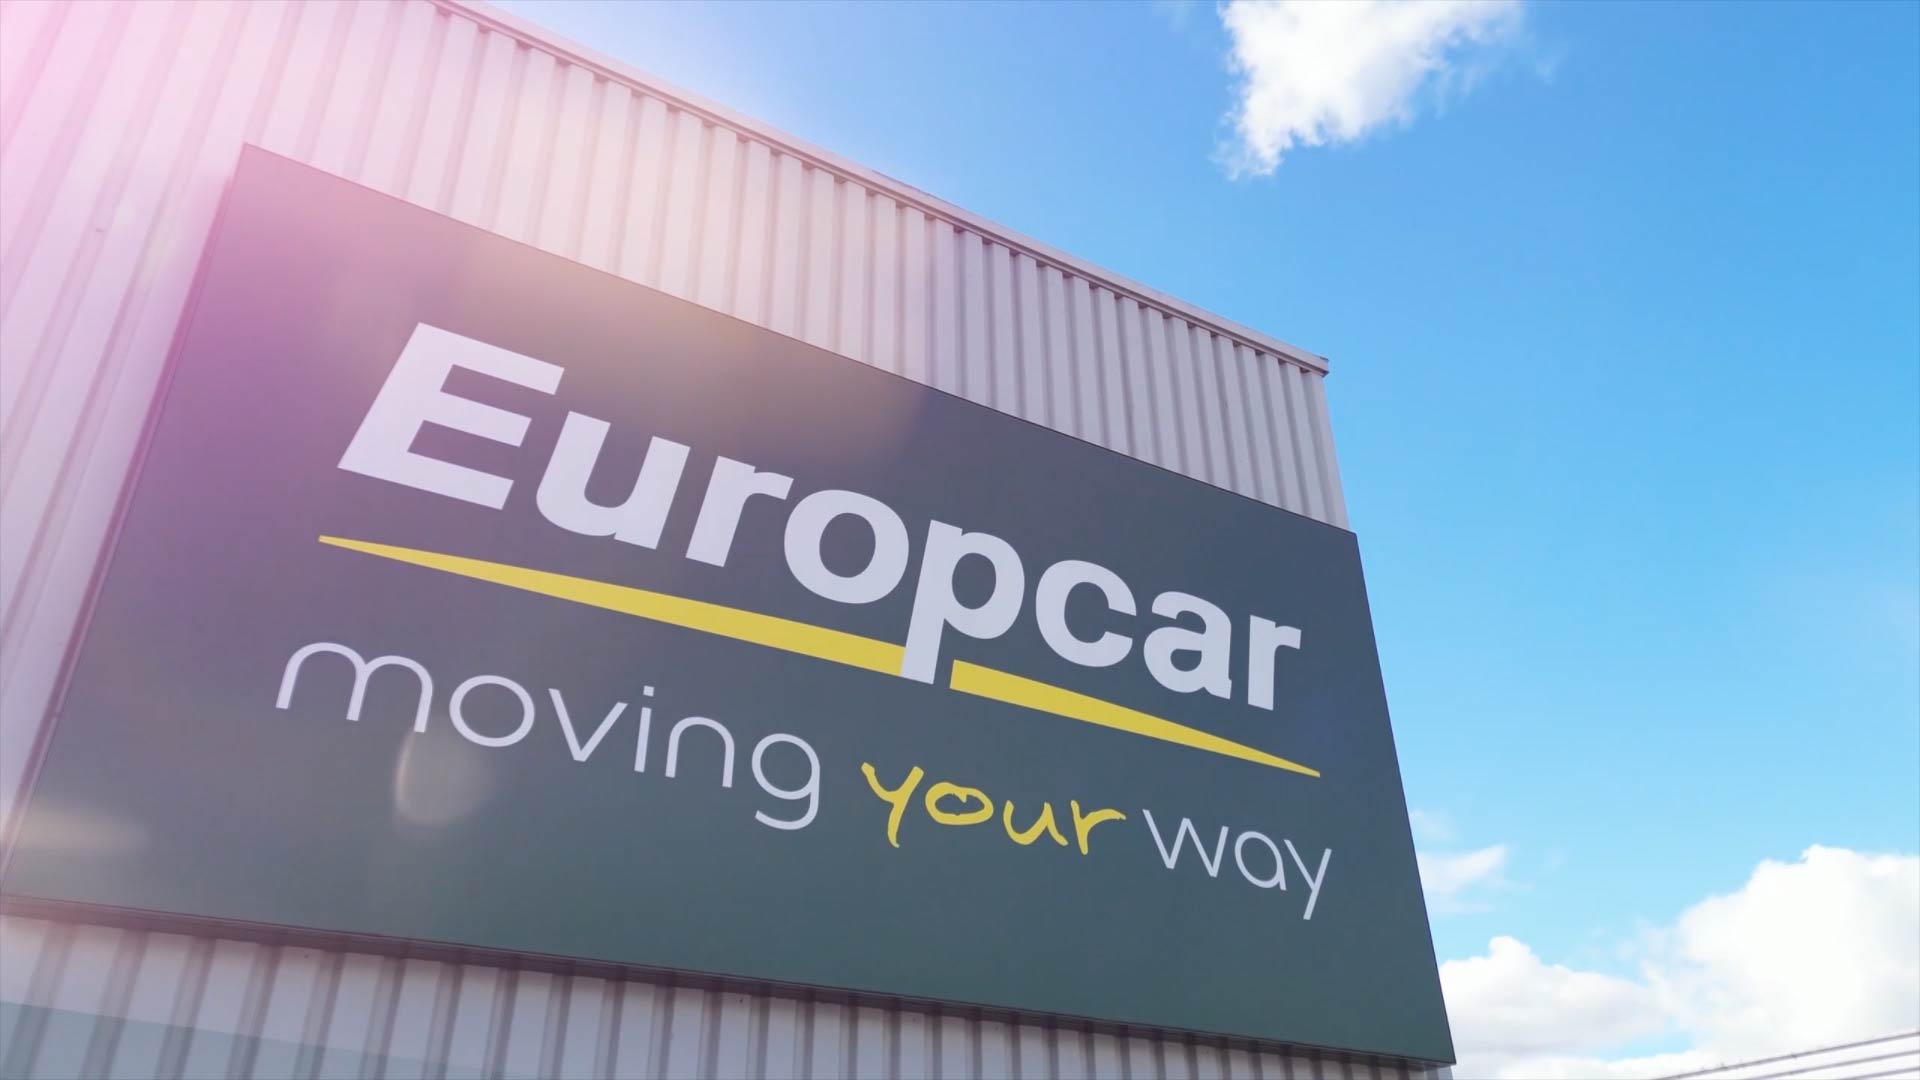 Europcar depot